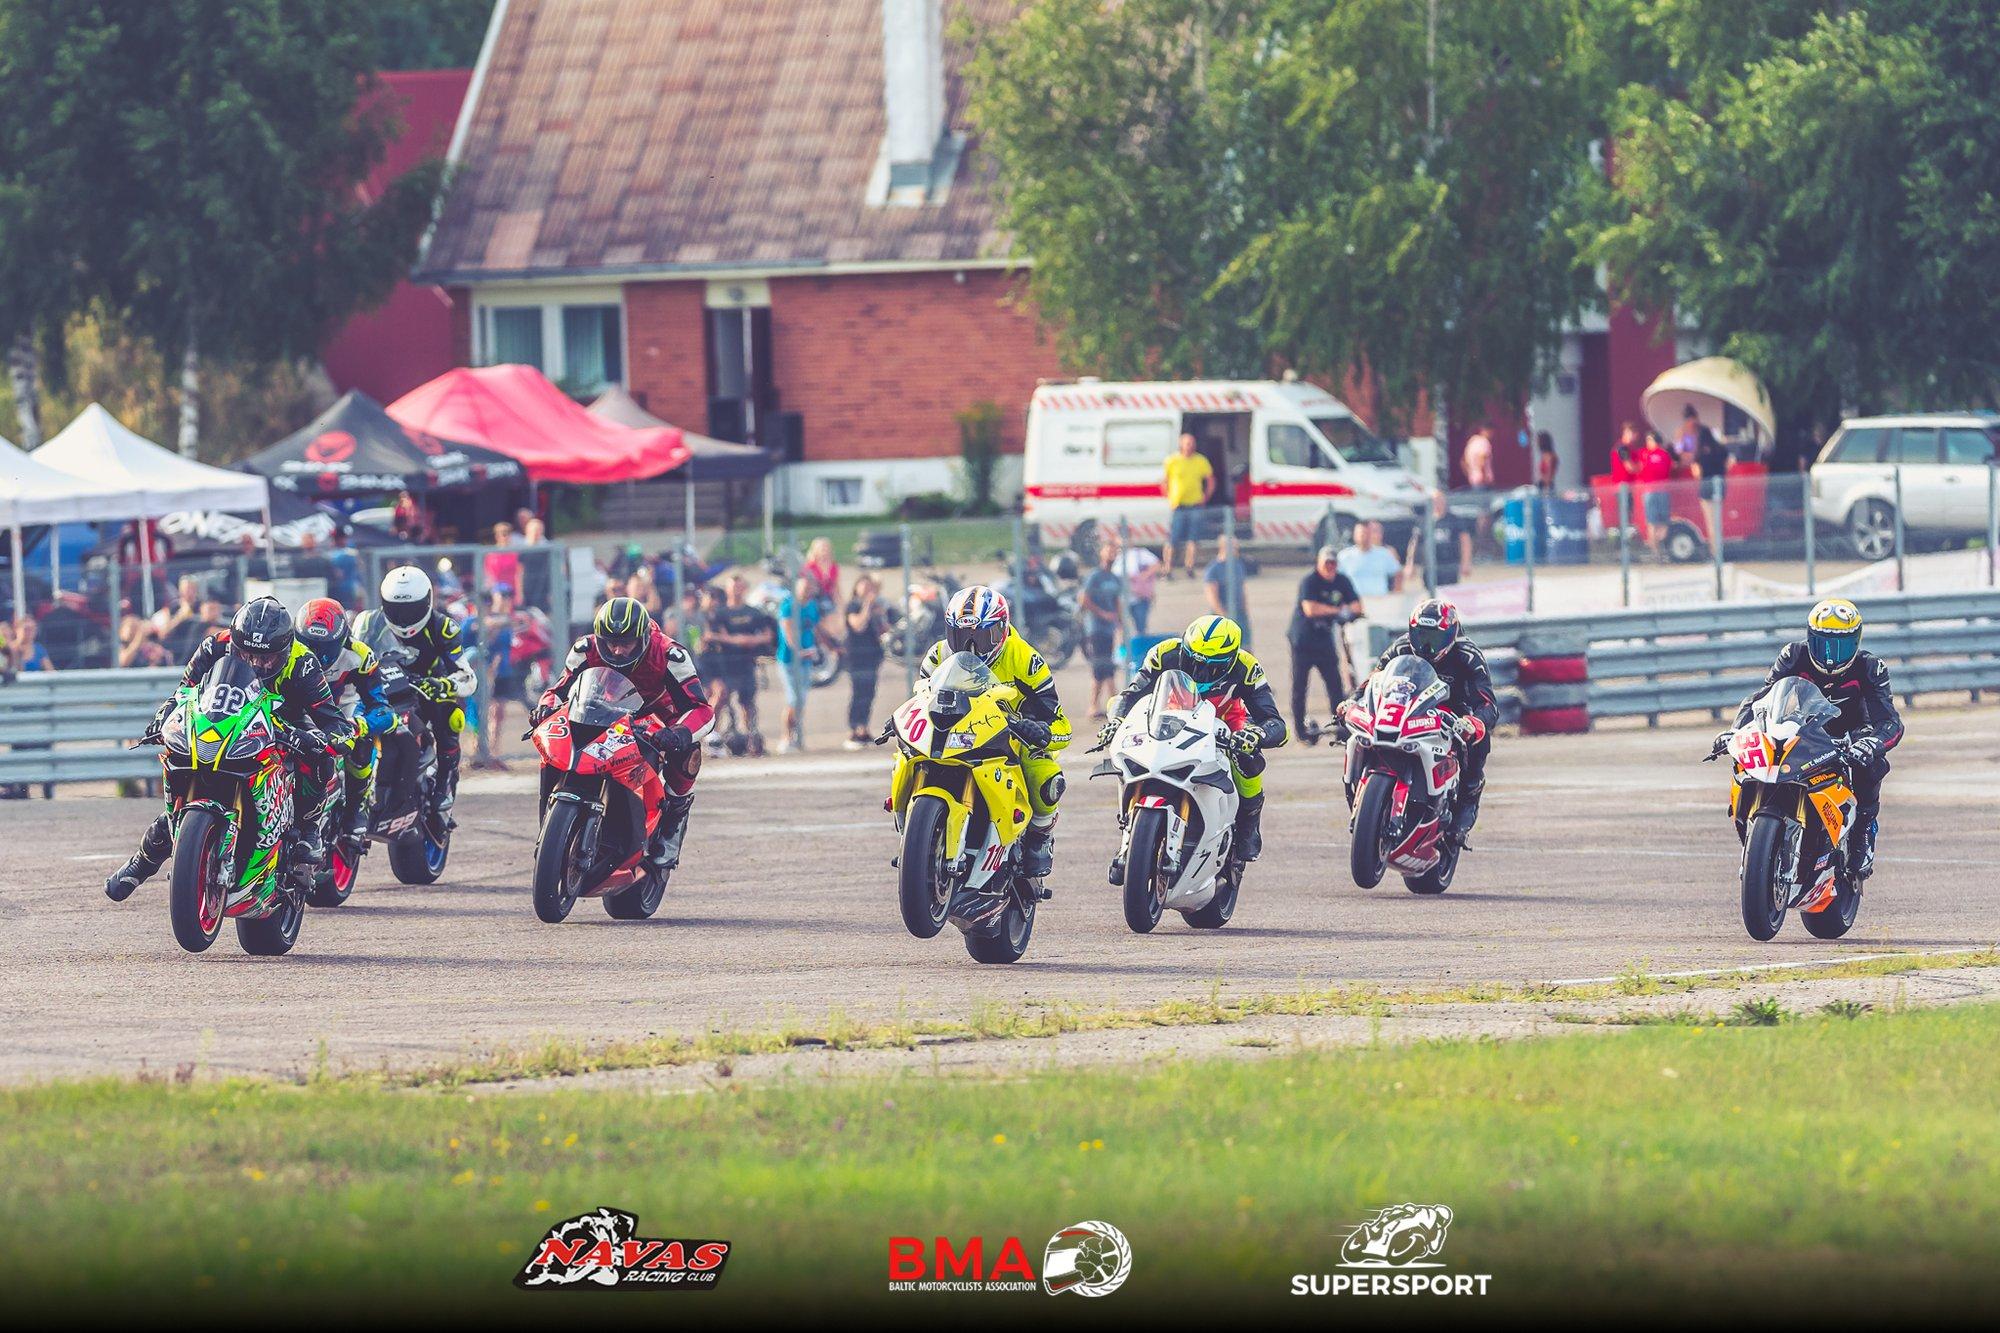 BMA čempionatas prasideda: dviejų dienų motociklizmo fiesta Kačerginėje ir Kauno taurė greičiausiems